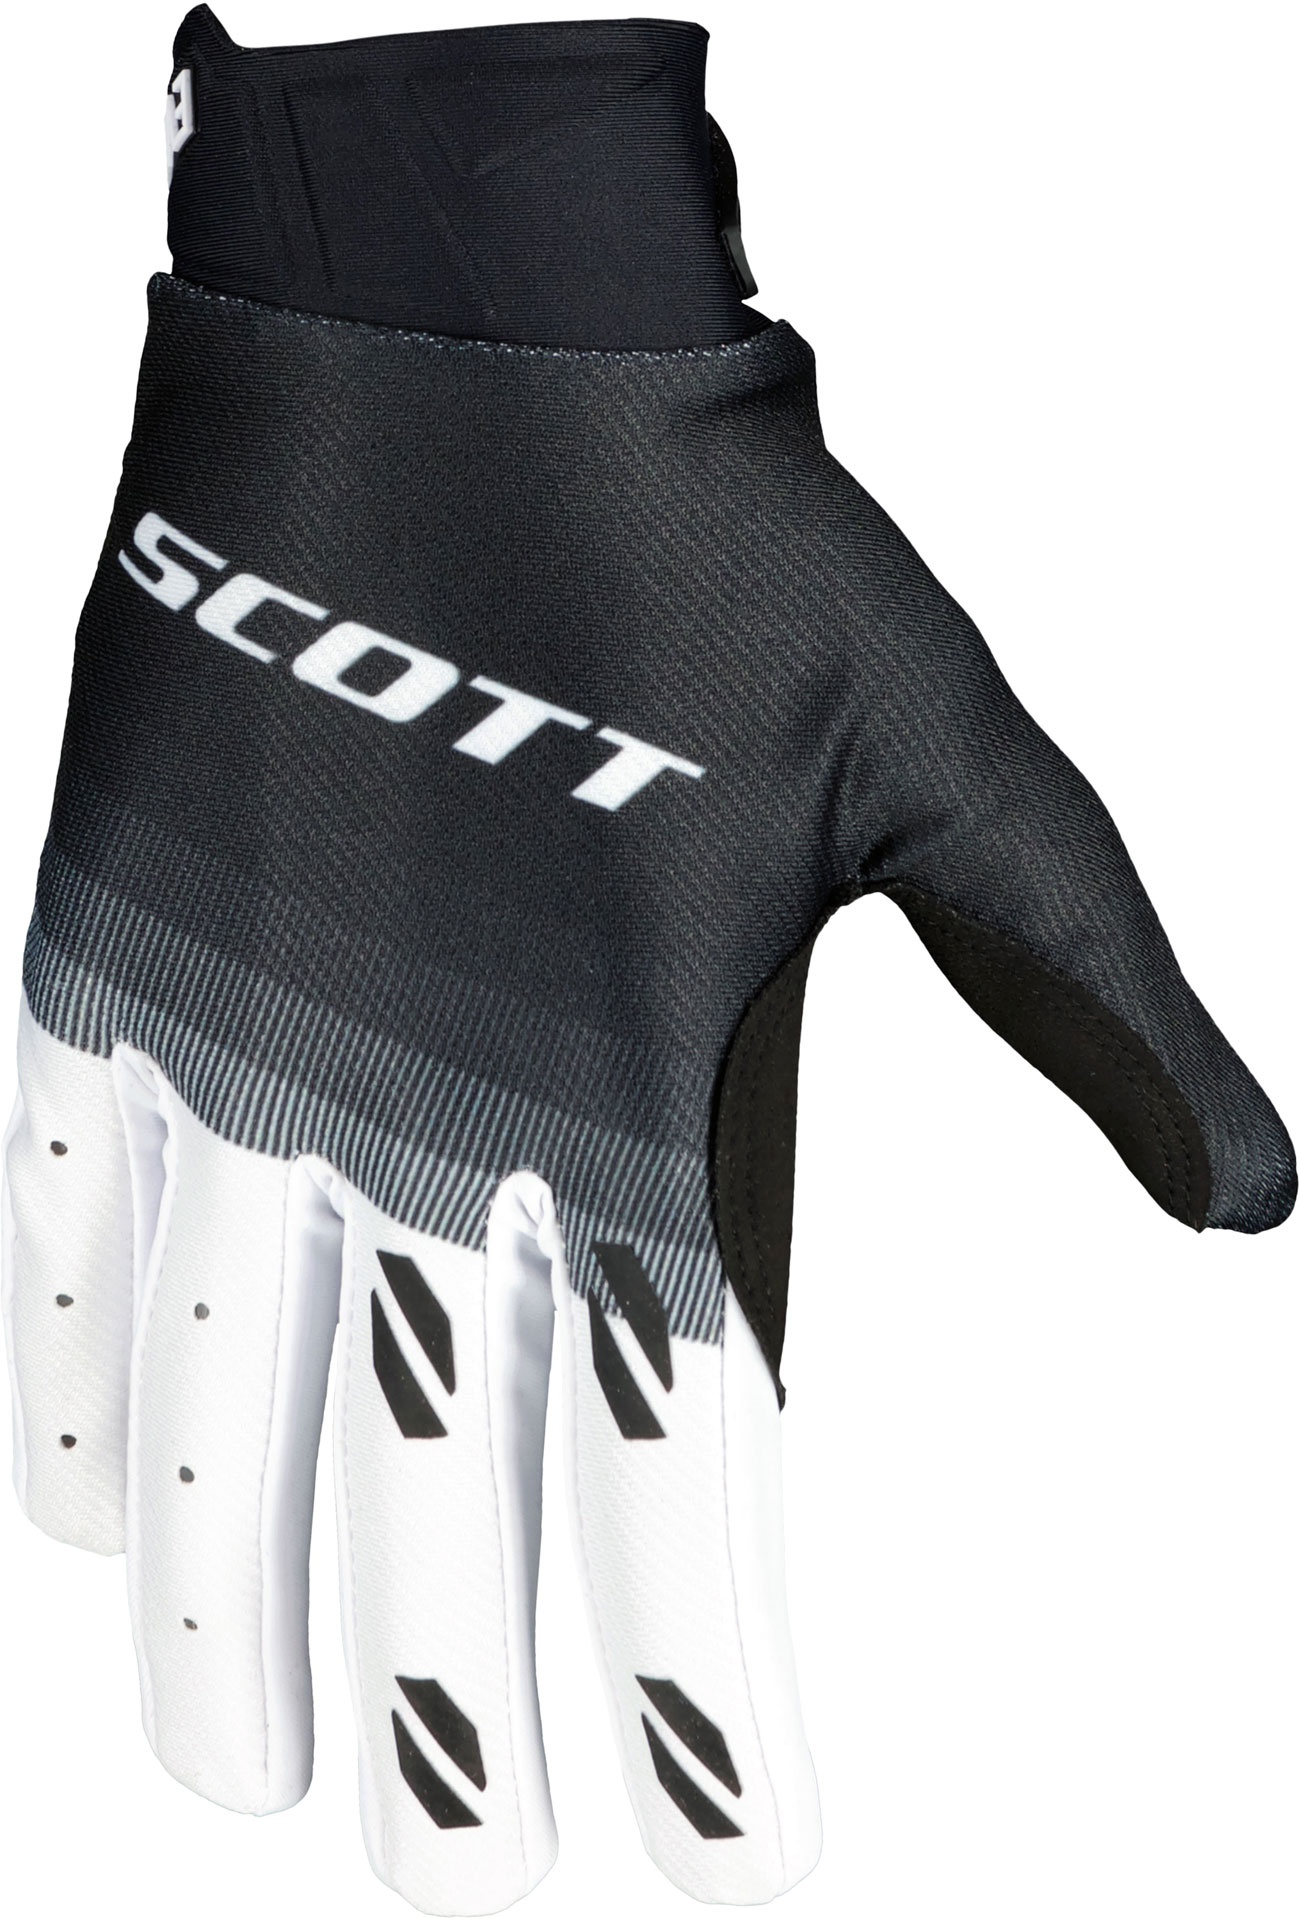 Scott Evo Fury S24, gants - Noir/Blanc - M